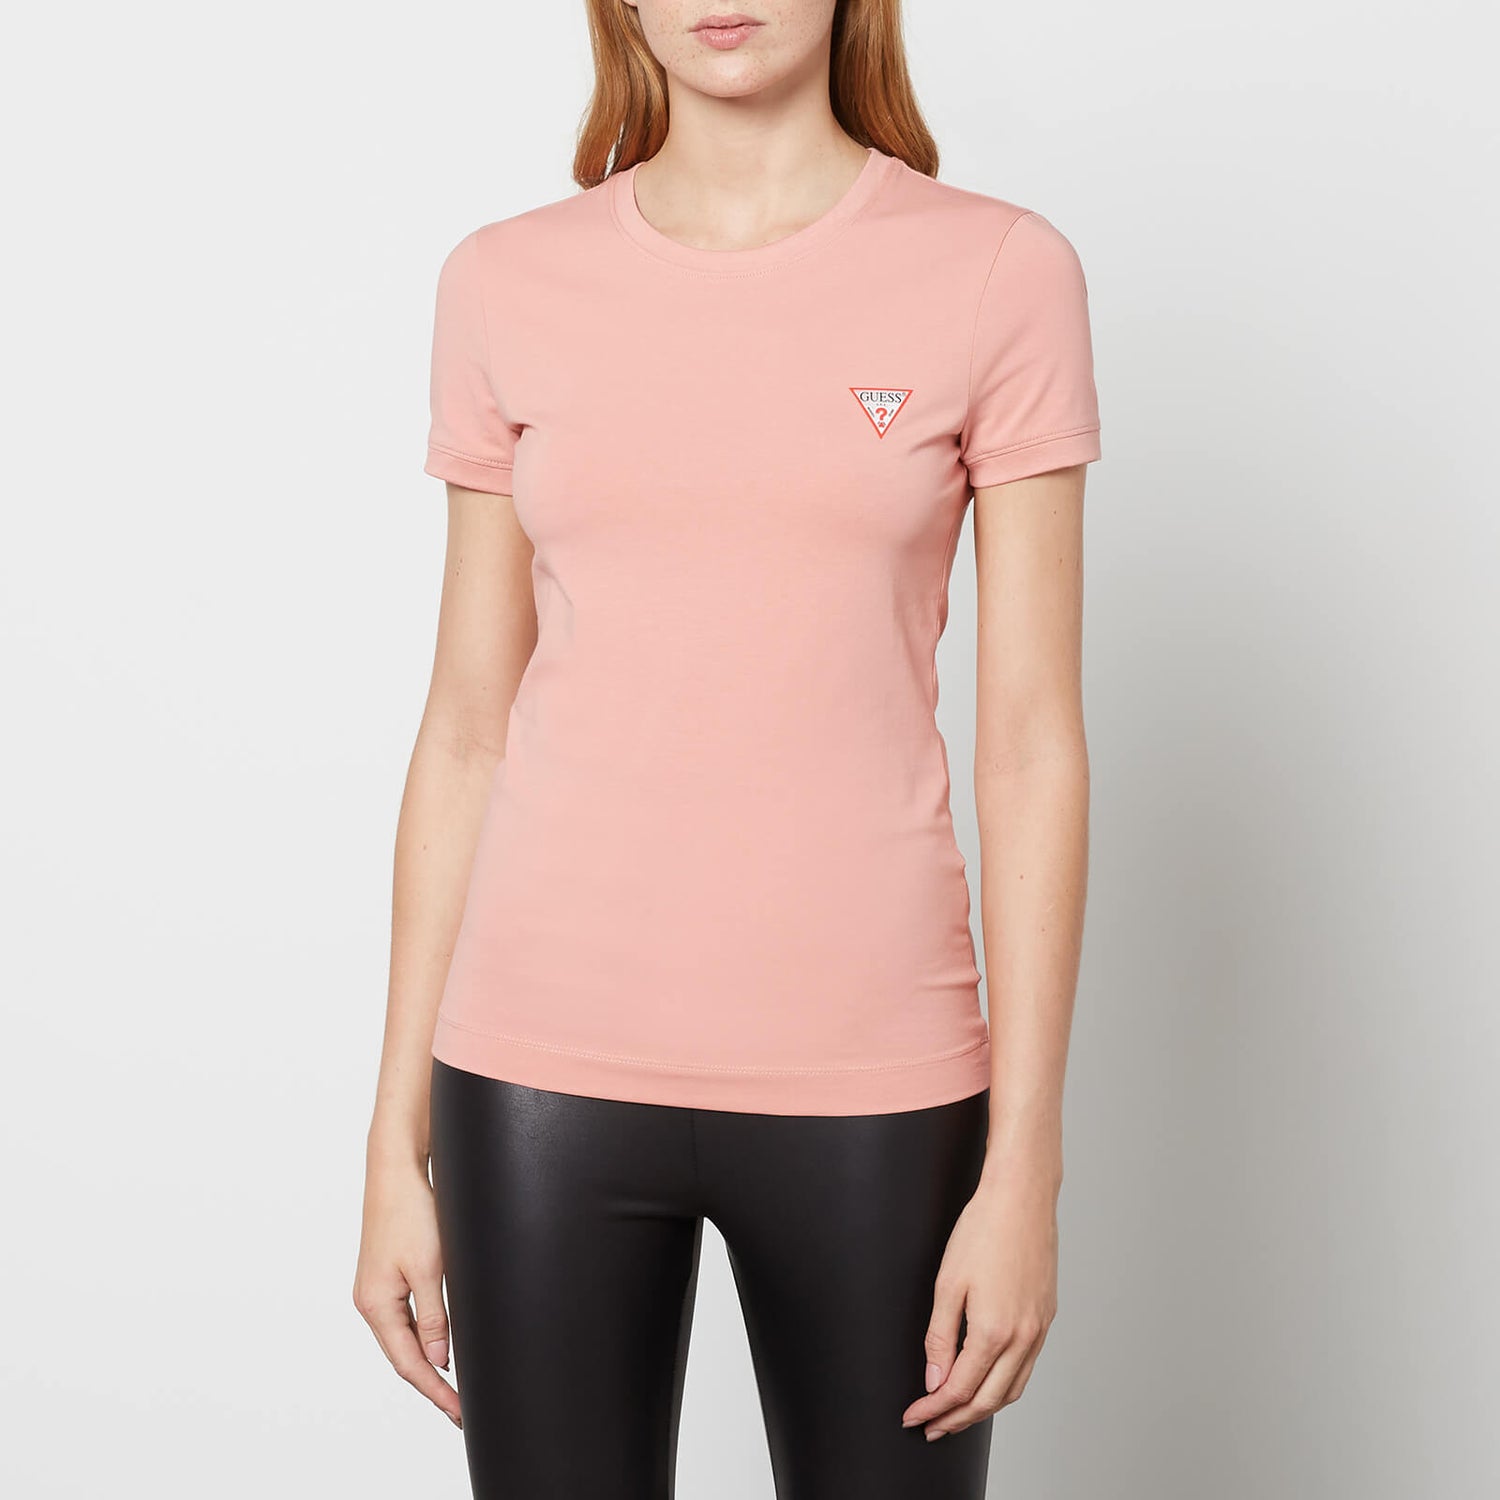 Guess Women's Ss Cn Mini Triangle T-Shirt - Midsummer Rose - XS